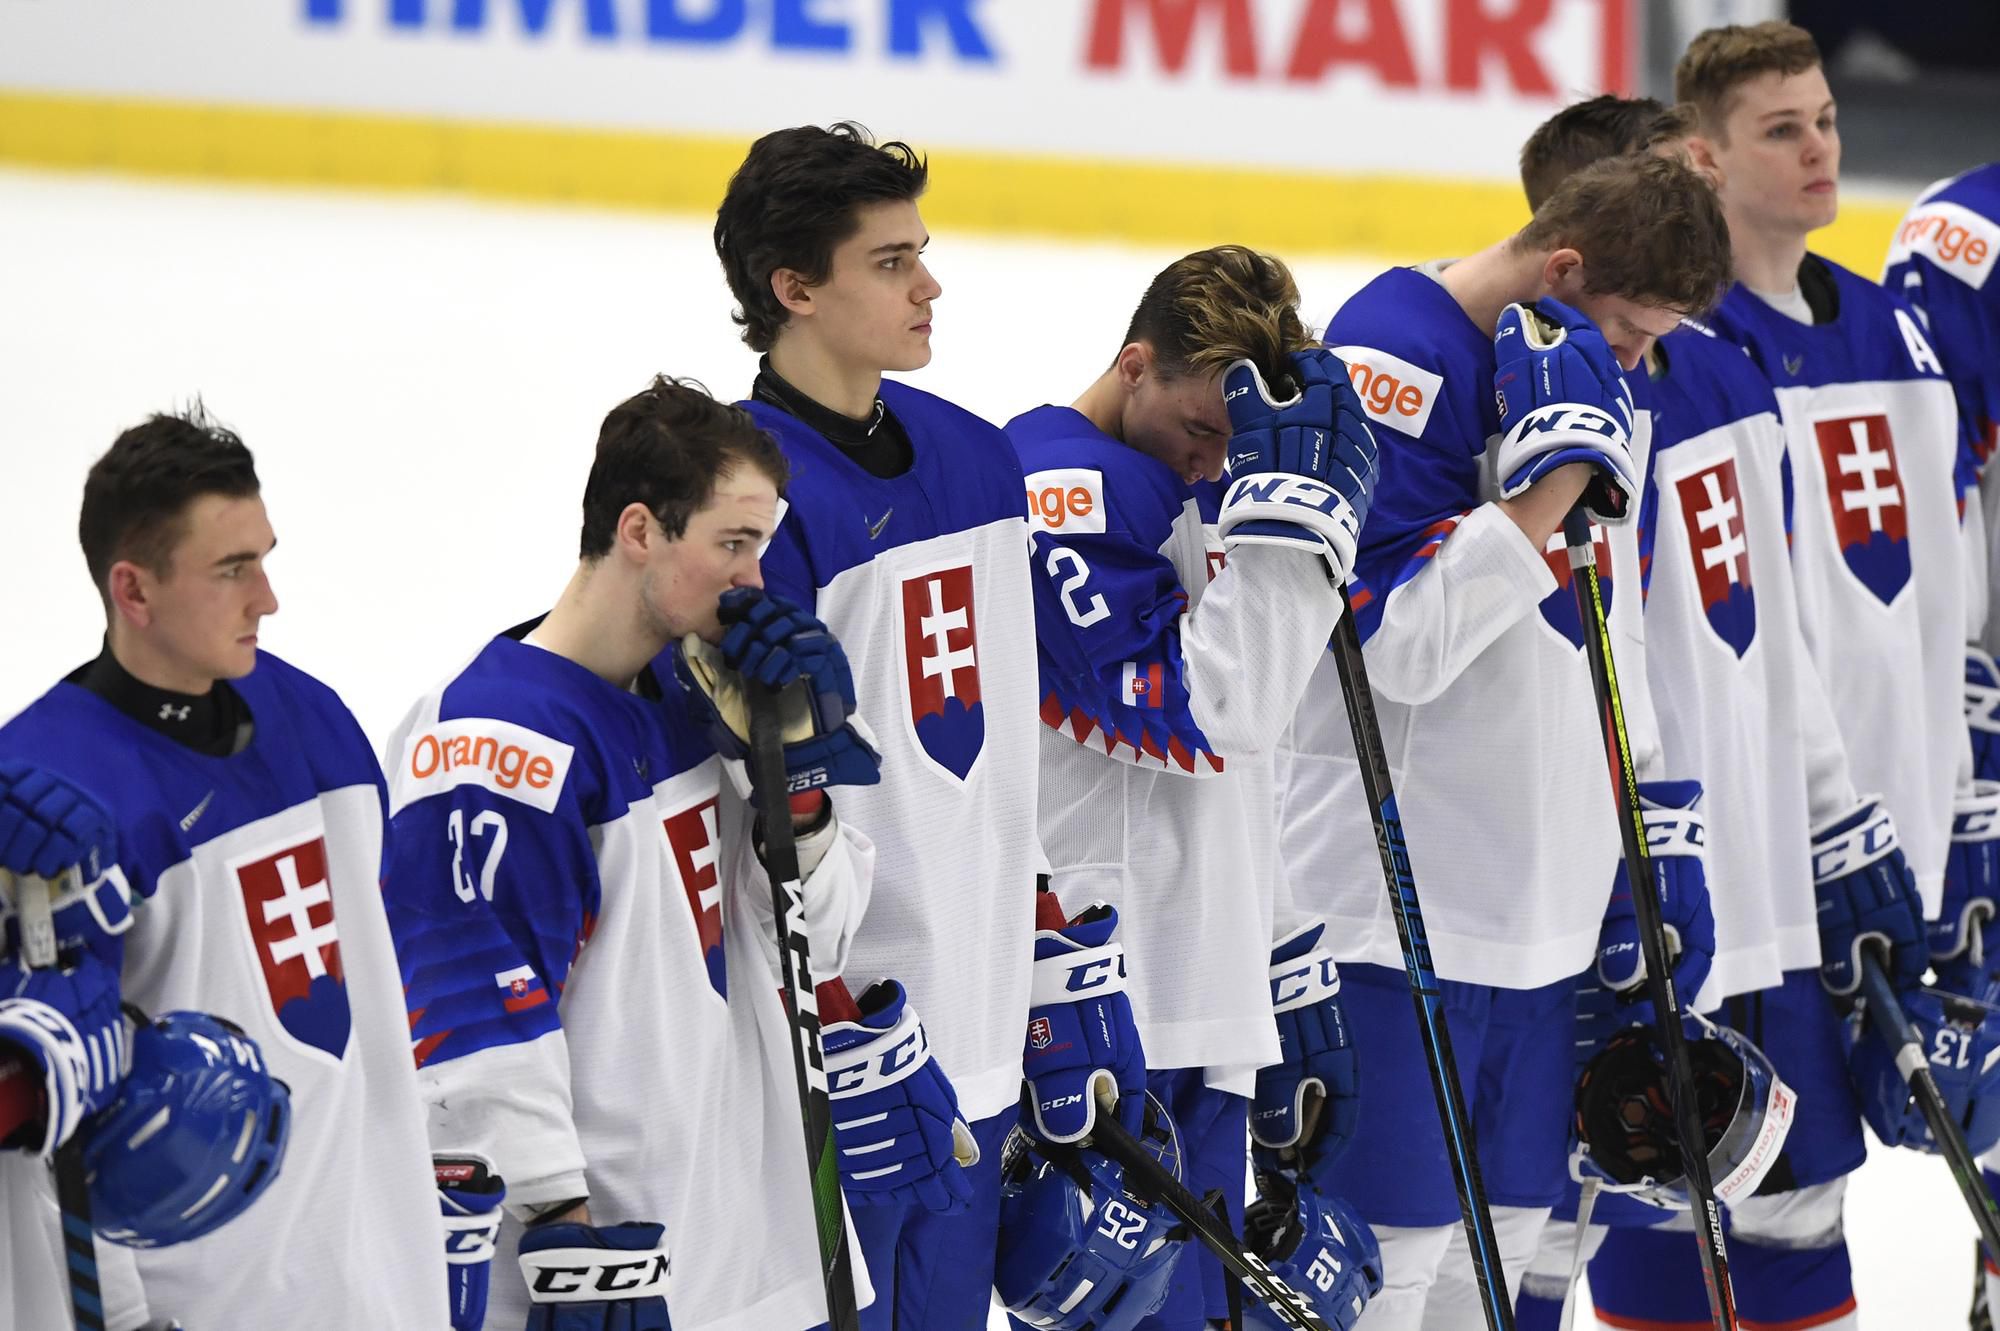 Majstrovstvá sveta v ľadovom hokeji hráčov do 20 rokov 2020.